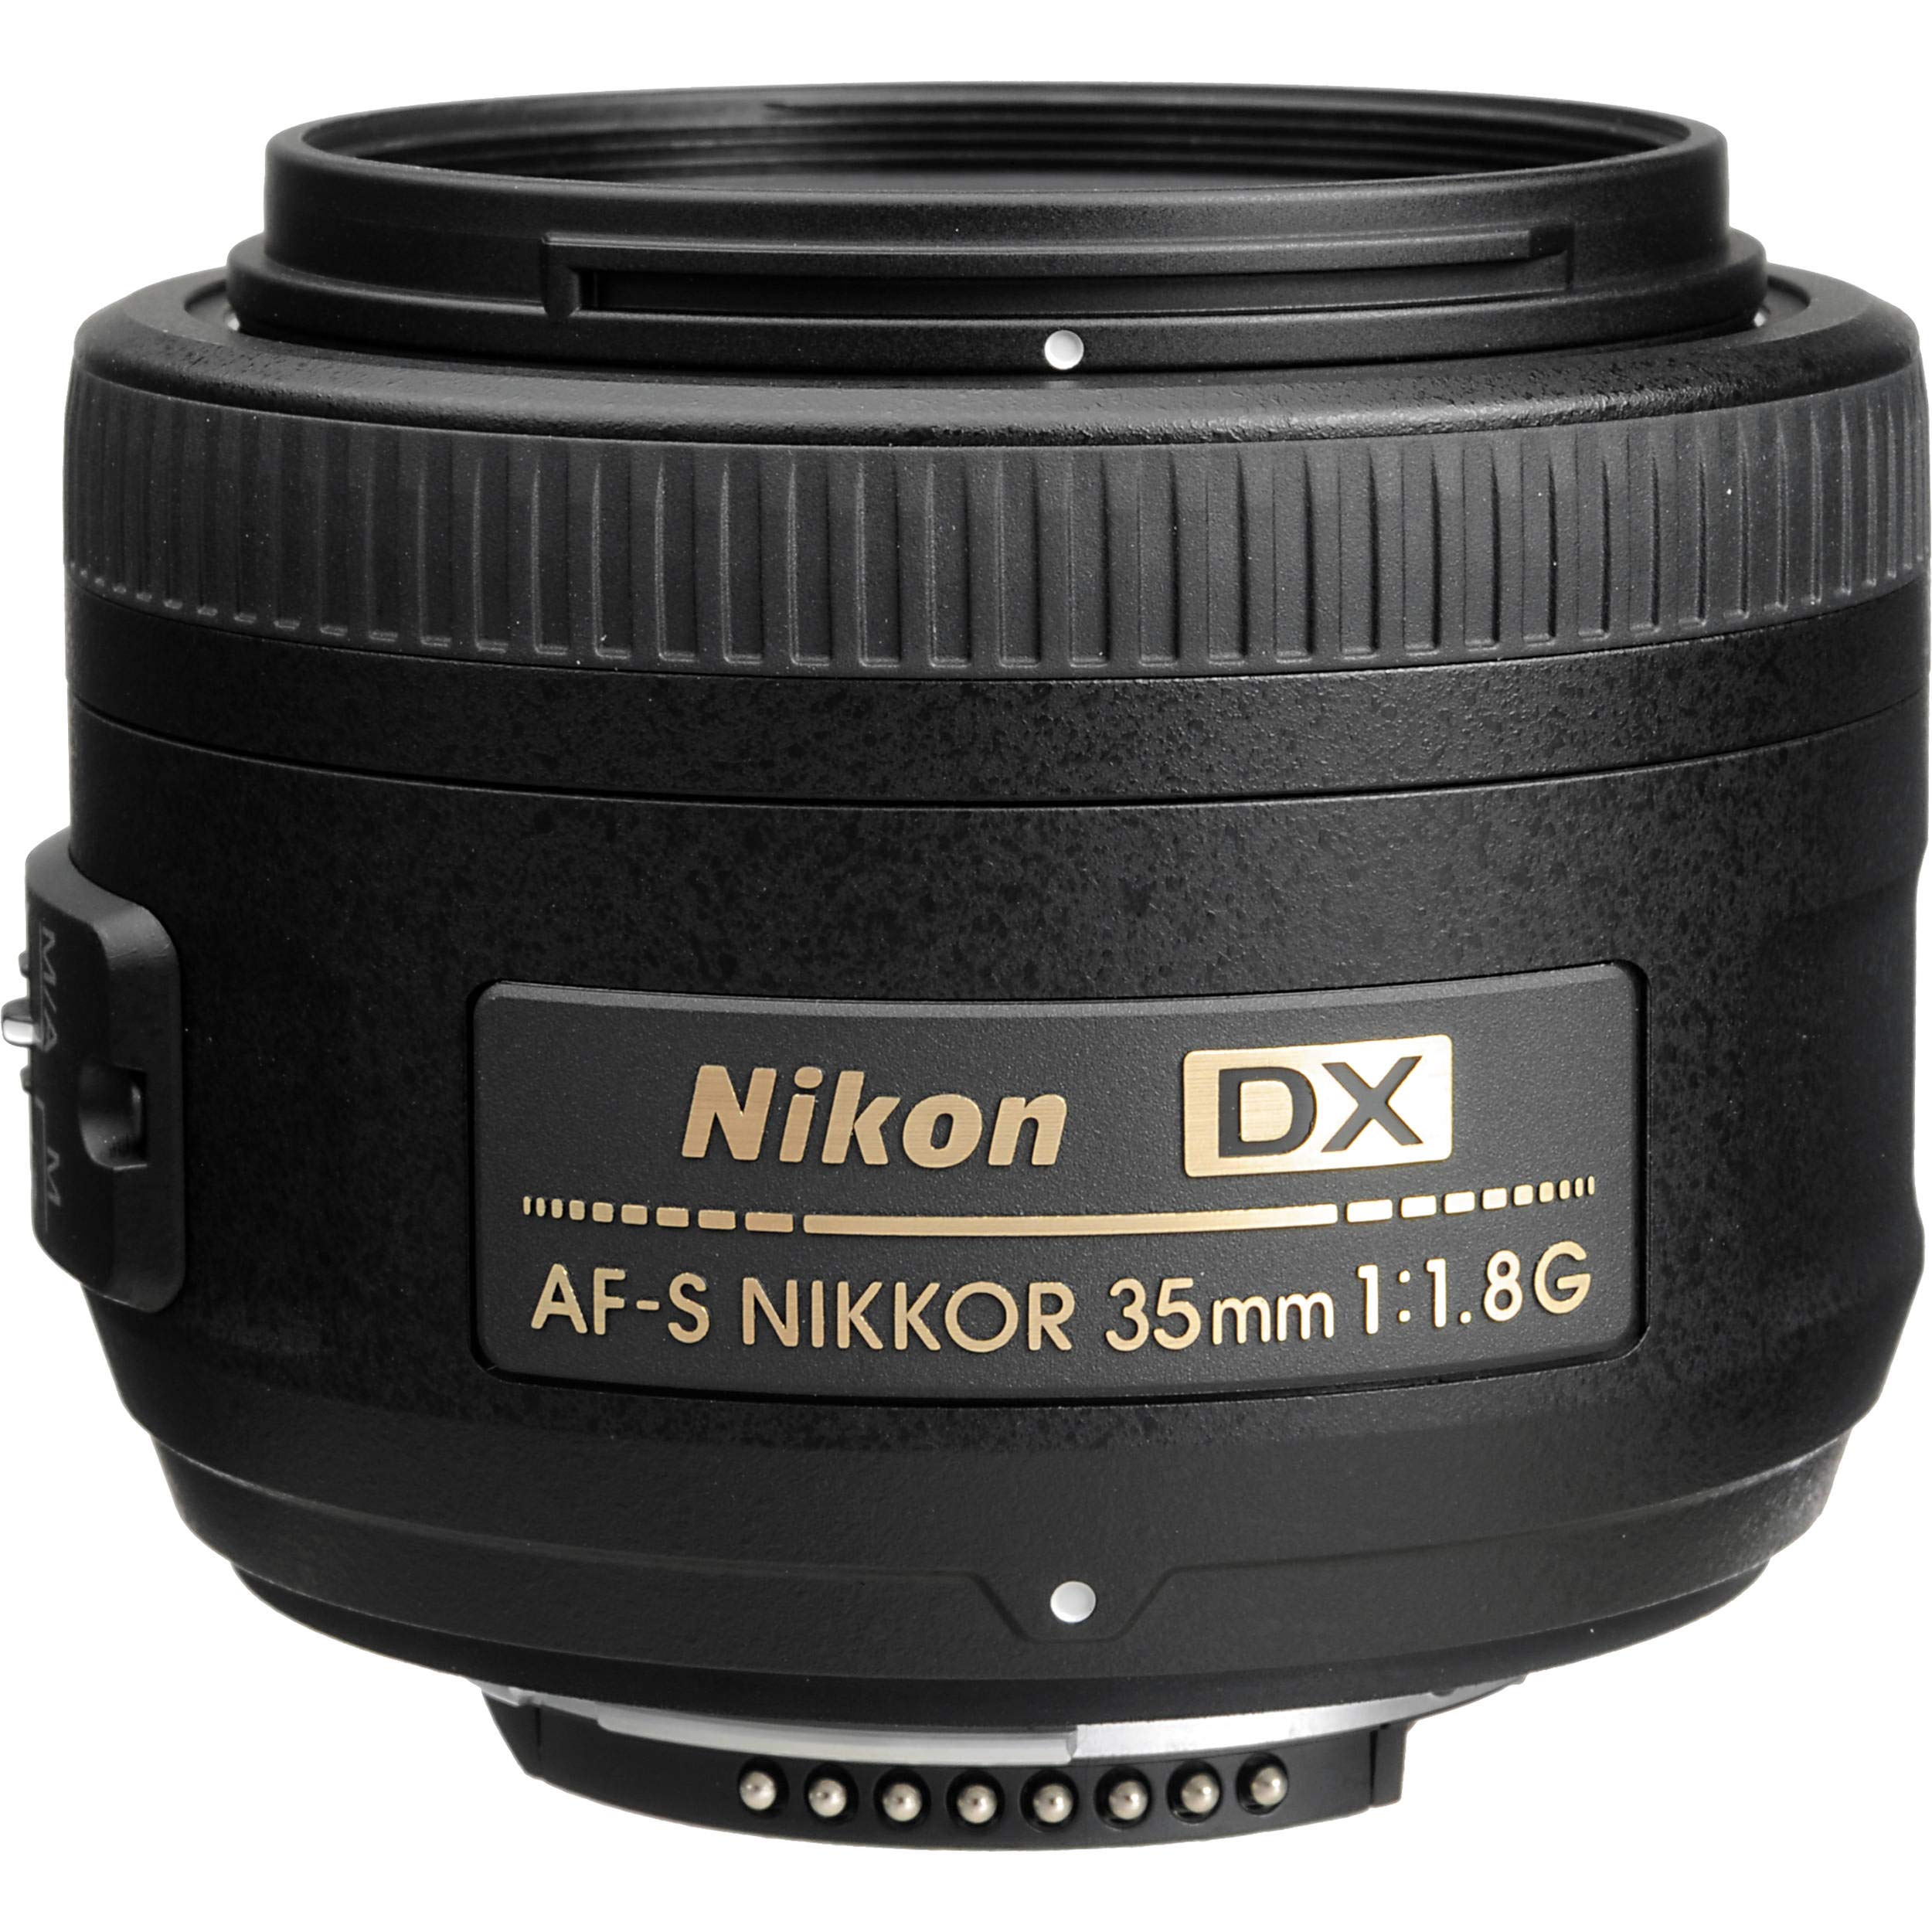 Nikon AF-S DX NIKKOR 35mm f/1.8G Lens + Cleaning Kit